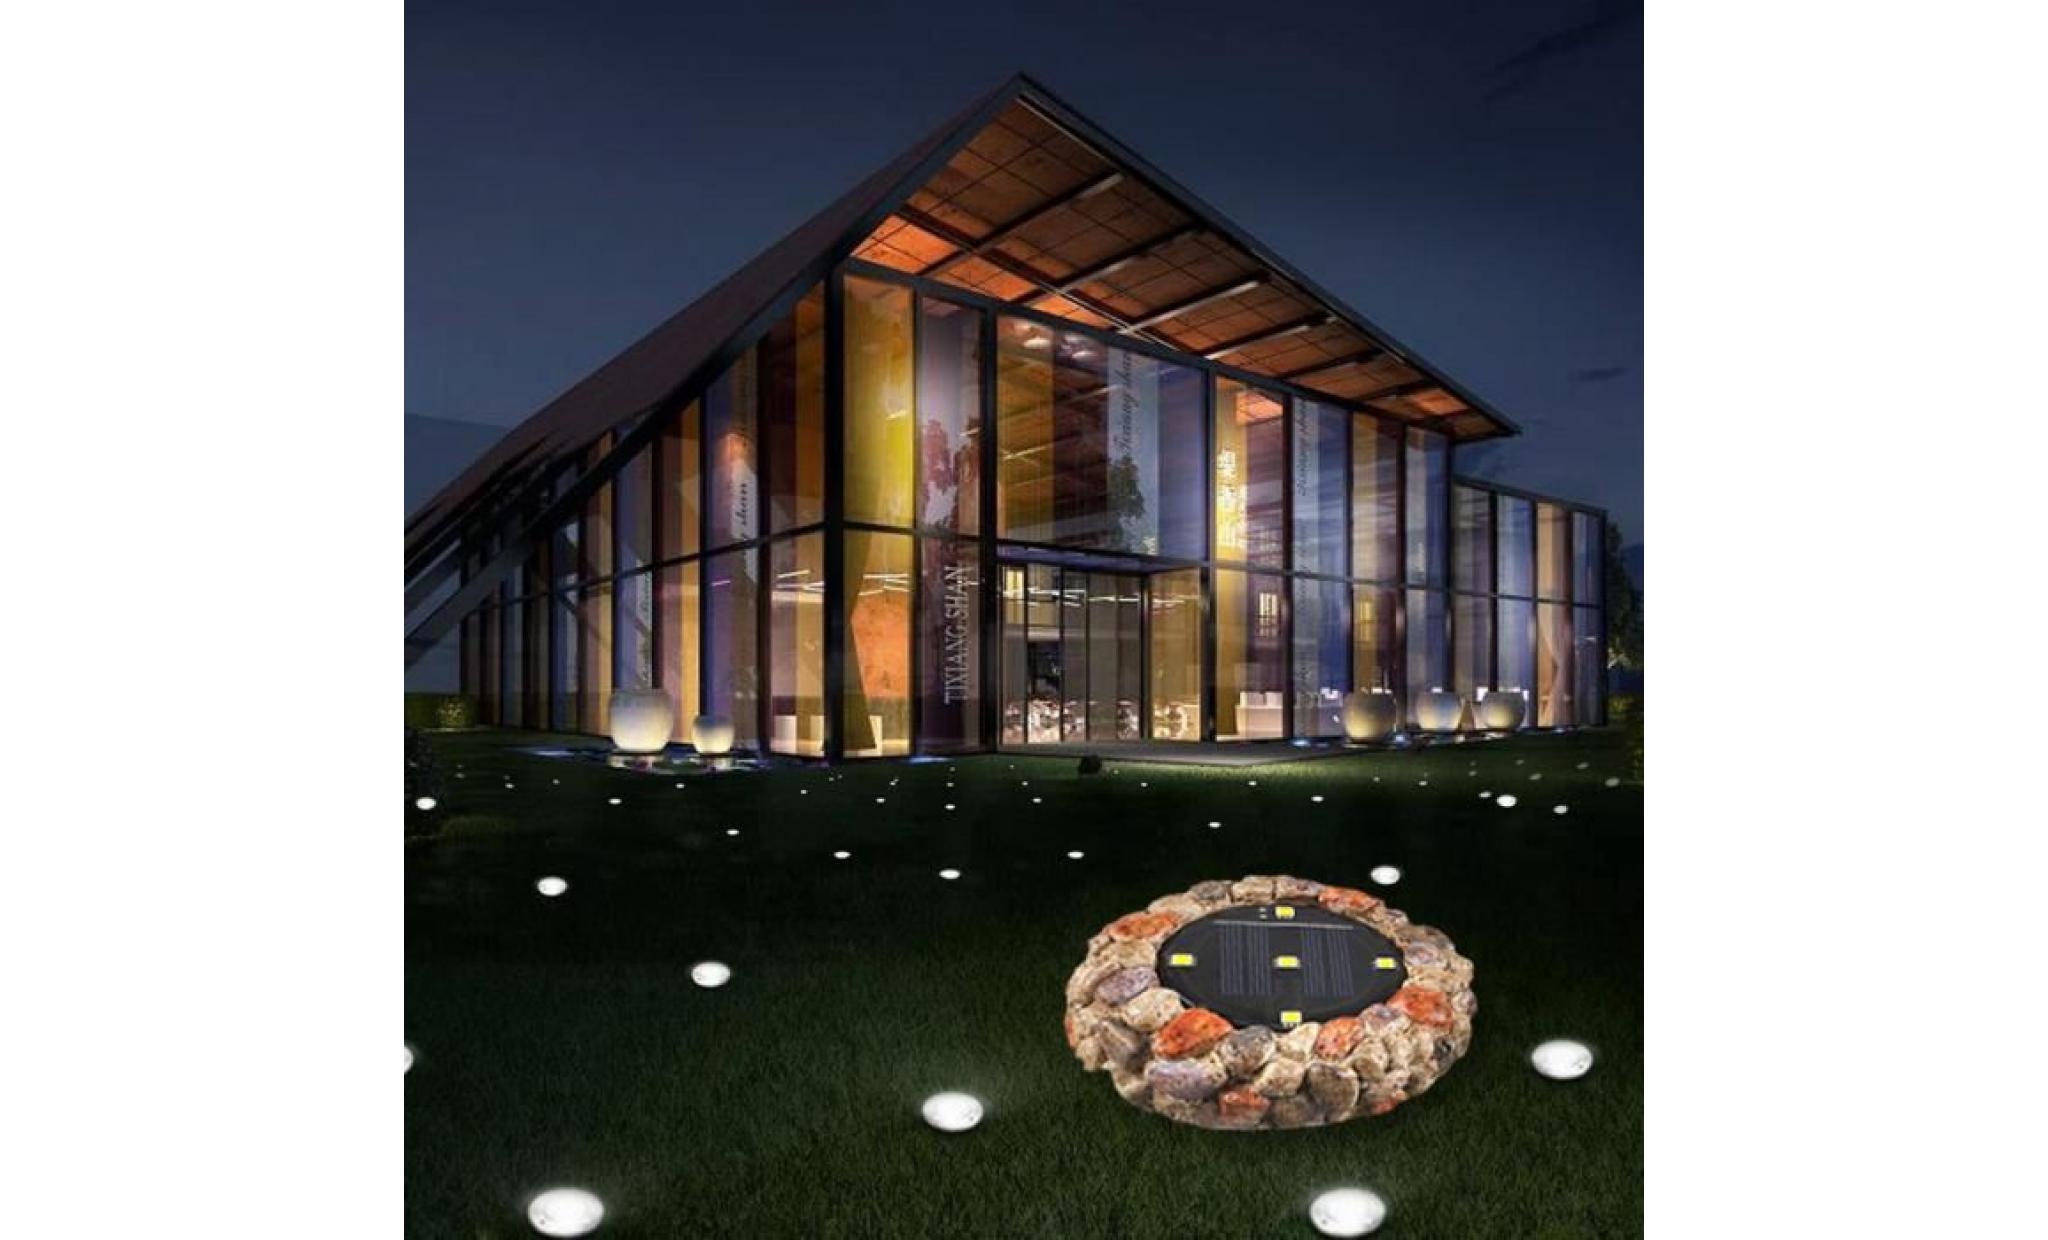 nouvelle lumière solaire souterrain étanche à l'eau 5led imitation pierre insérée lampe d'herbe jardin jardin a lpp80808943a_188